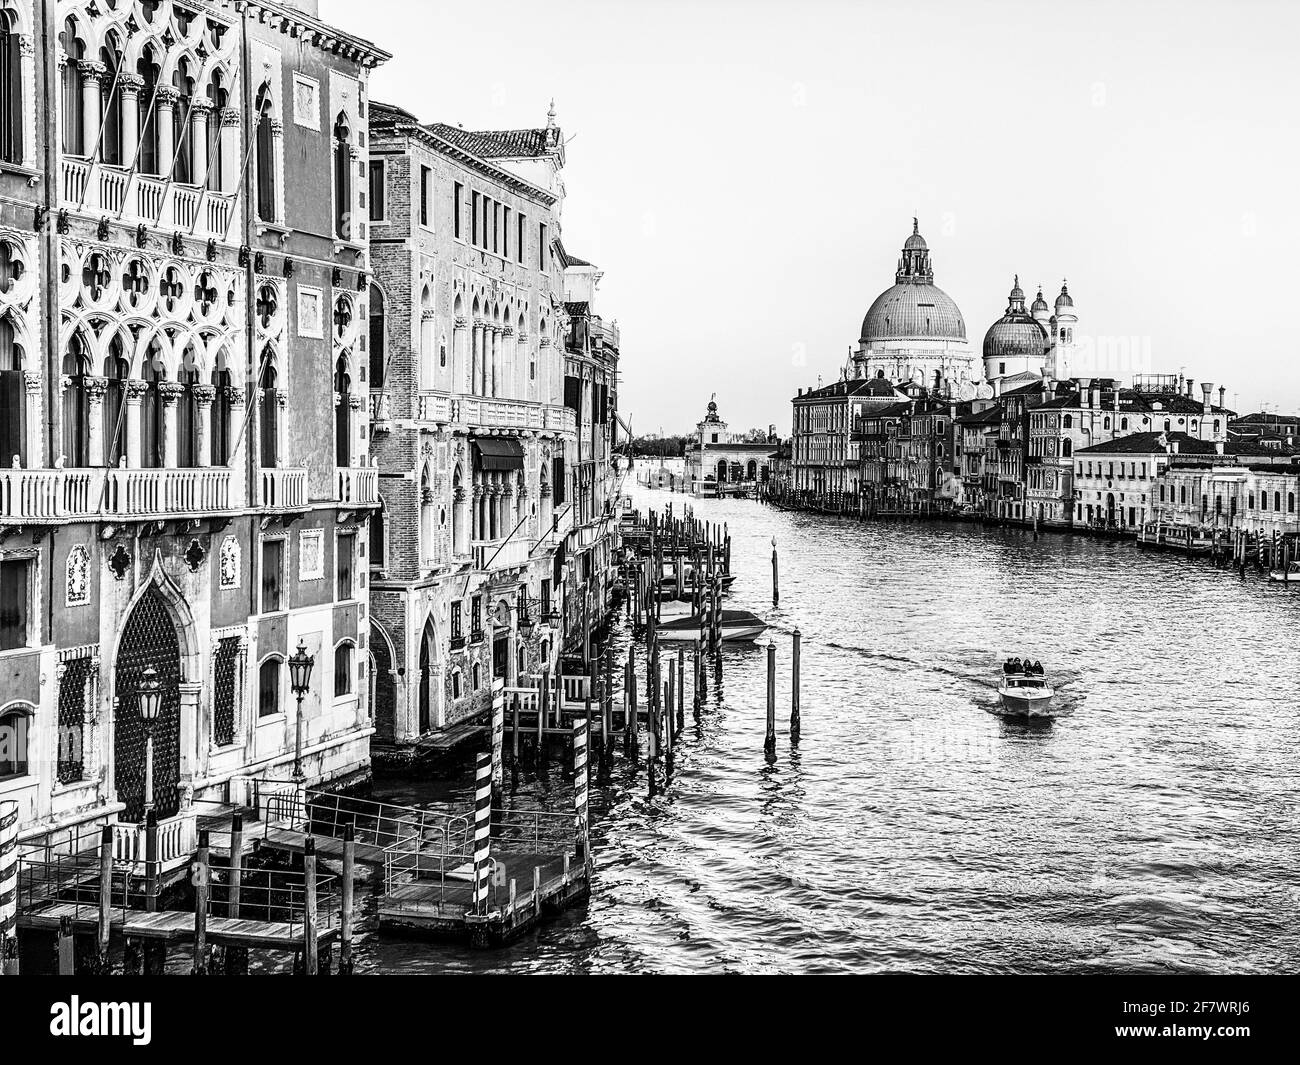 Noir et blanc vue sur le Grand Canal et la basilique Santa Maria della Salute depuis le Ponte dell'Accademia à Venise, Italie Banque D'Images